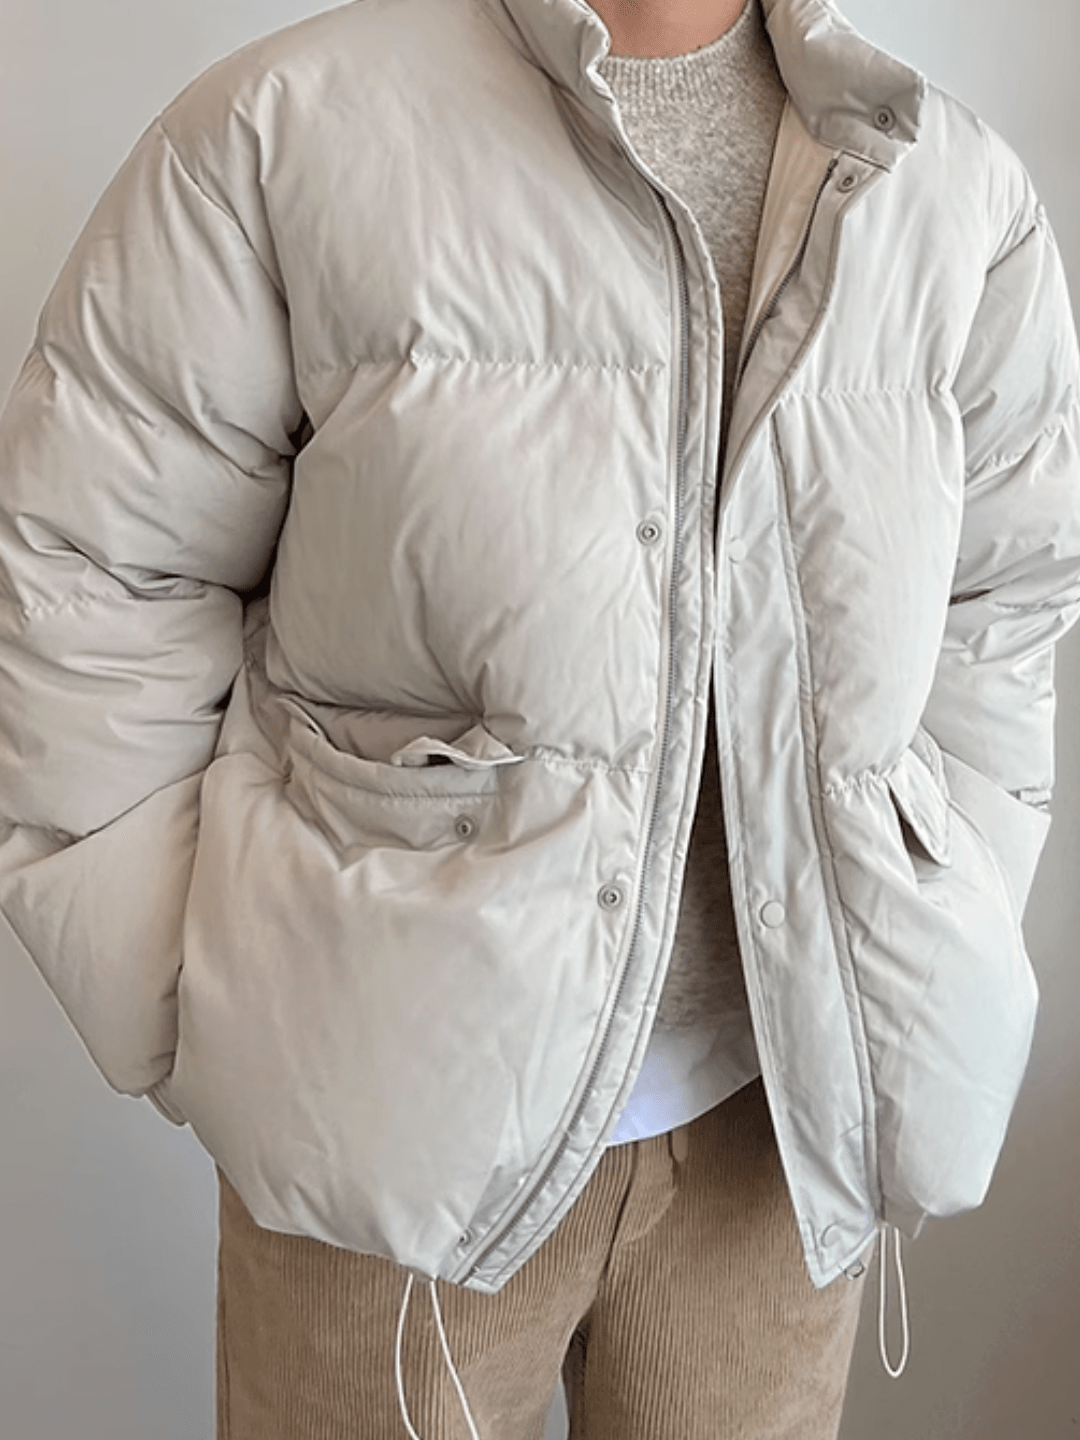 [MRCYC] Korean simplicity cotton coat jackett na712